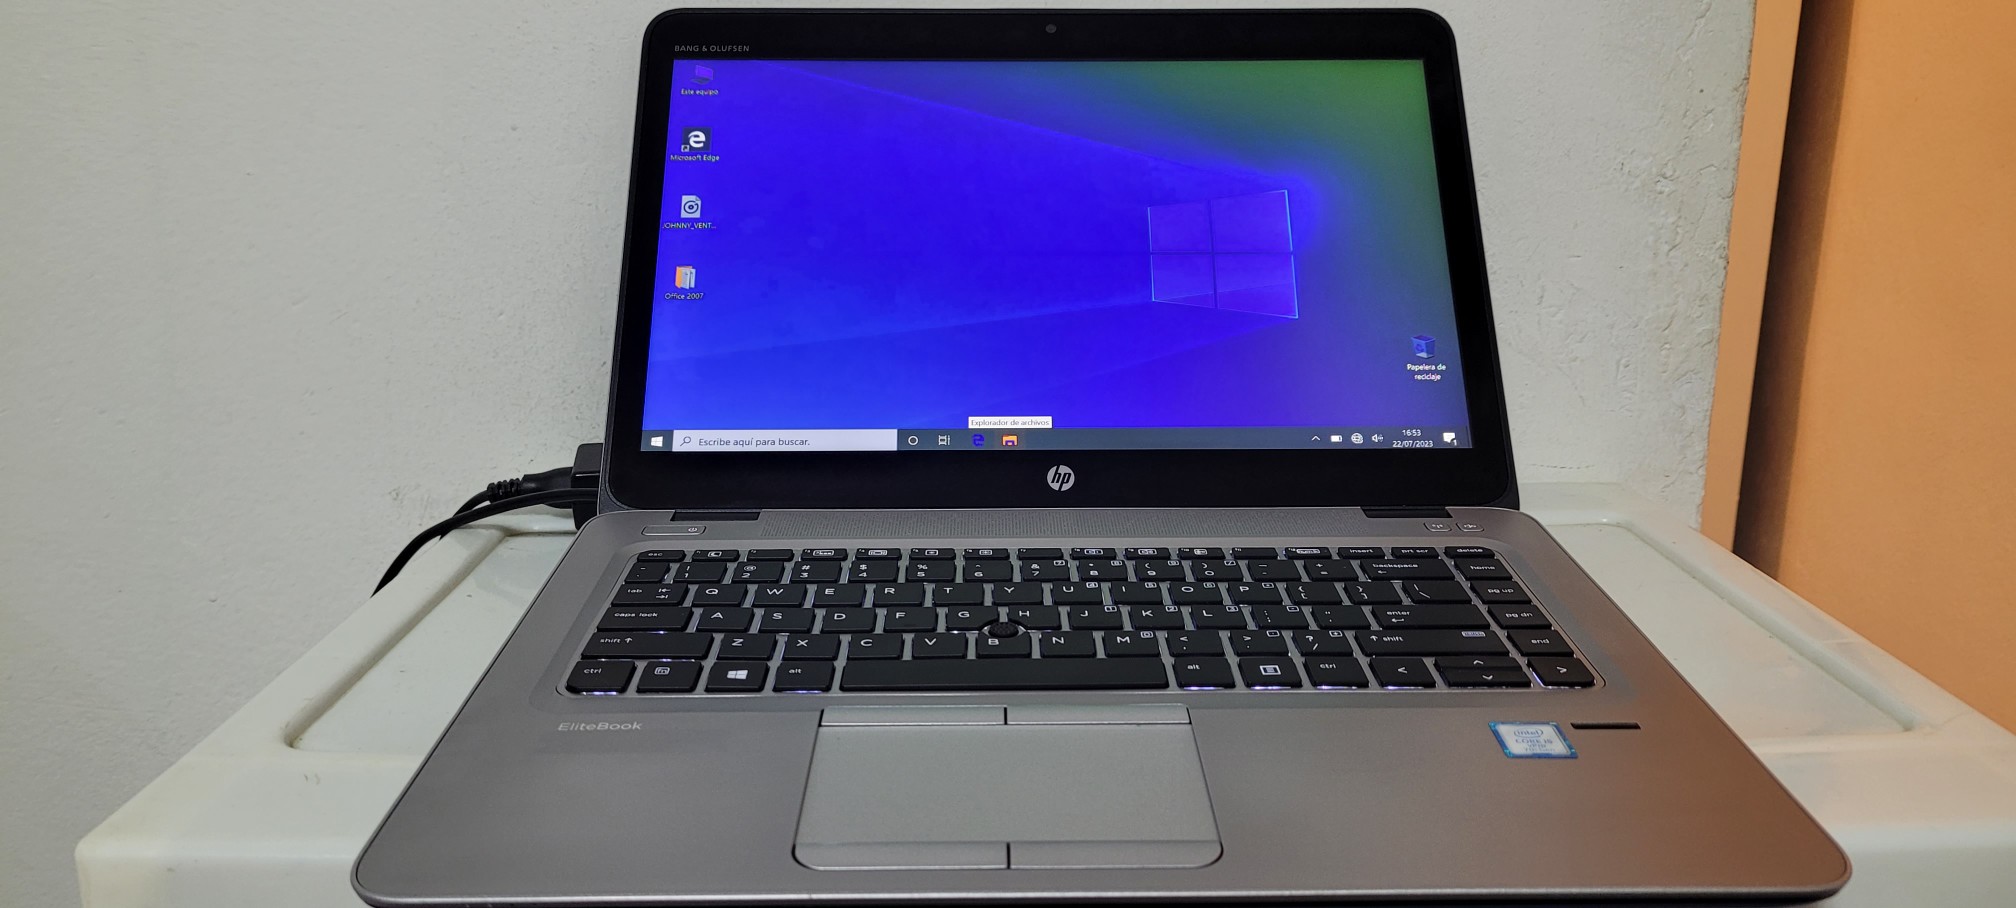 computadoras y laptops - Laptop hp Touch 14 Pulg Core i5 7ma Ram 8gb dd4 Disco 128gb Y 320gb full